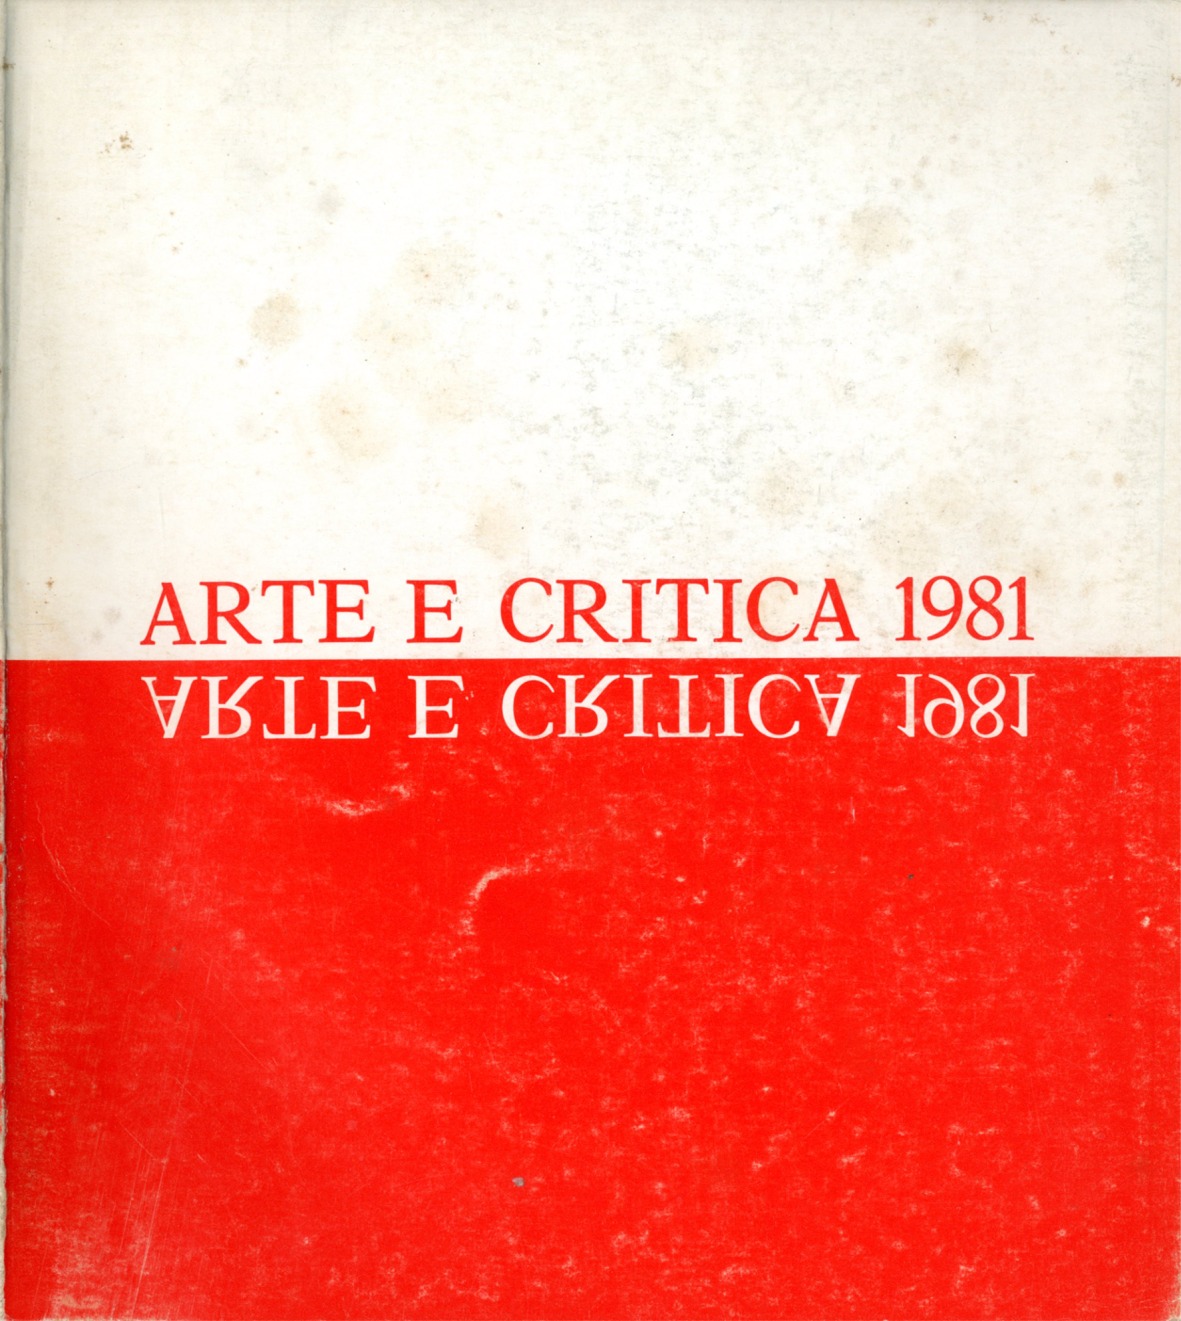 Arte e critica 1981